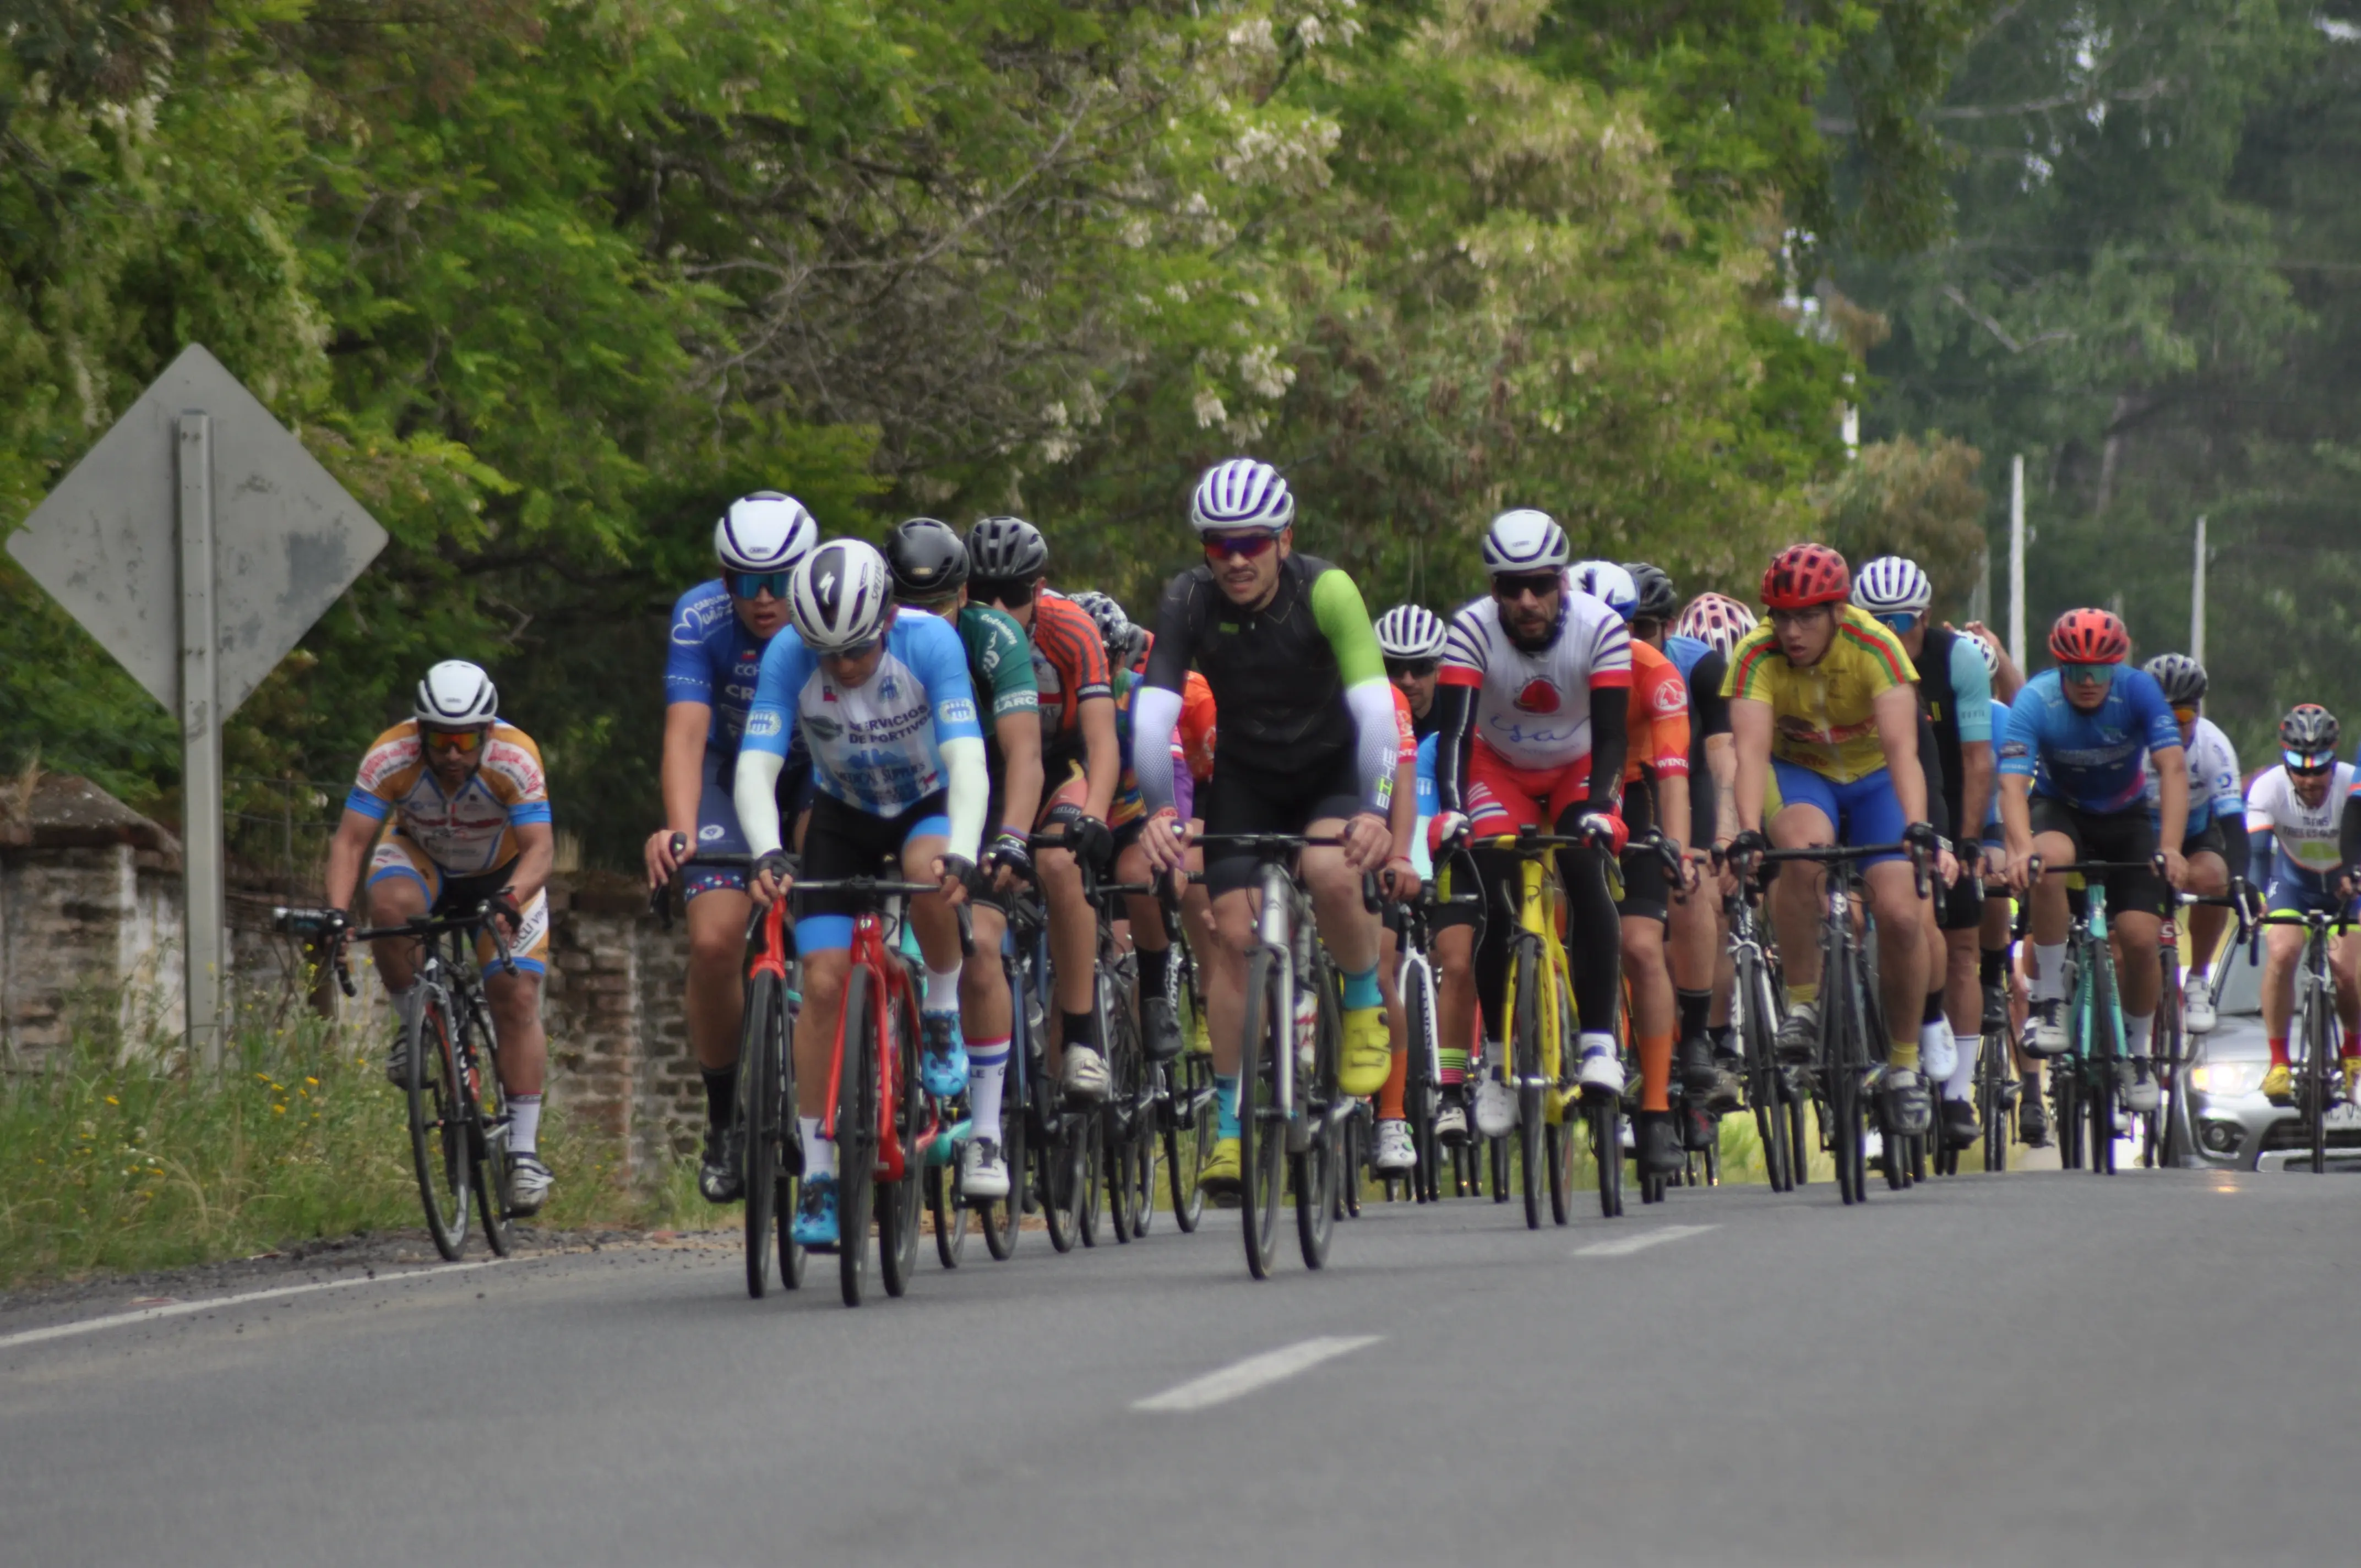 Tour Pelarco convocó a cerca de 200 ciclistas élite y aficionados